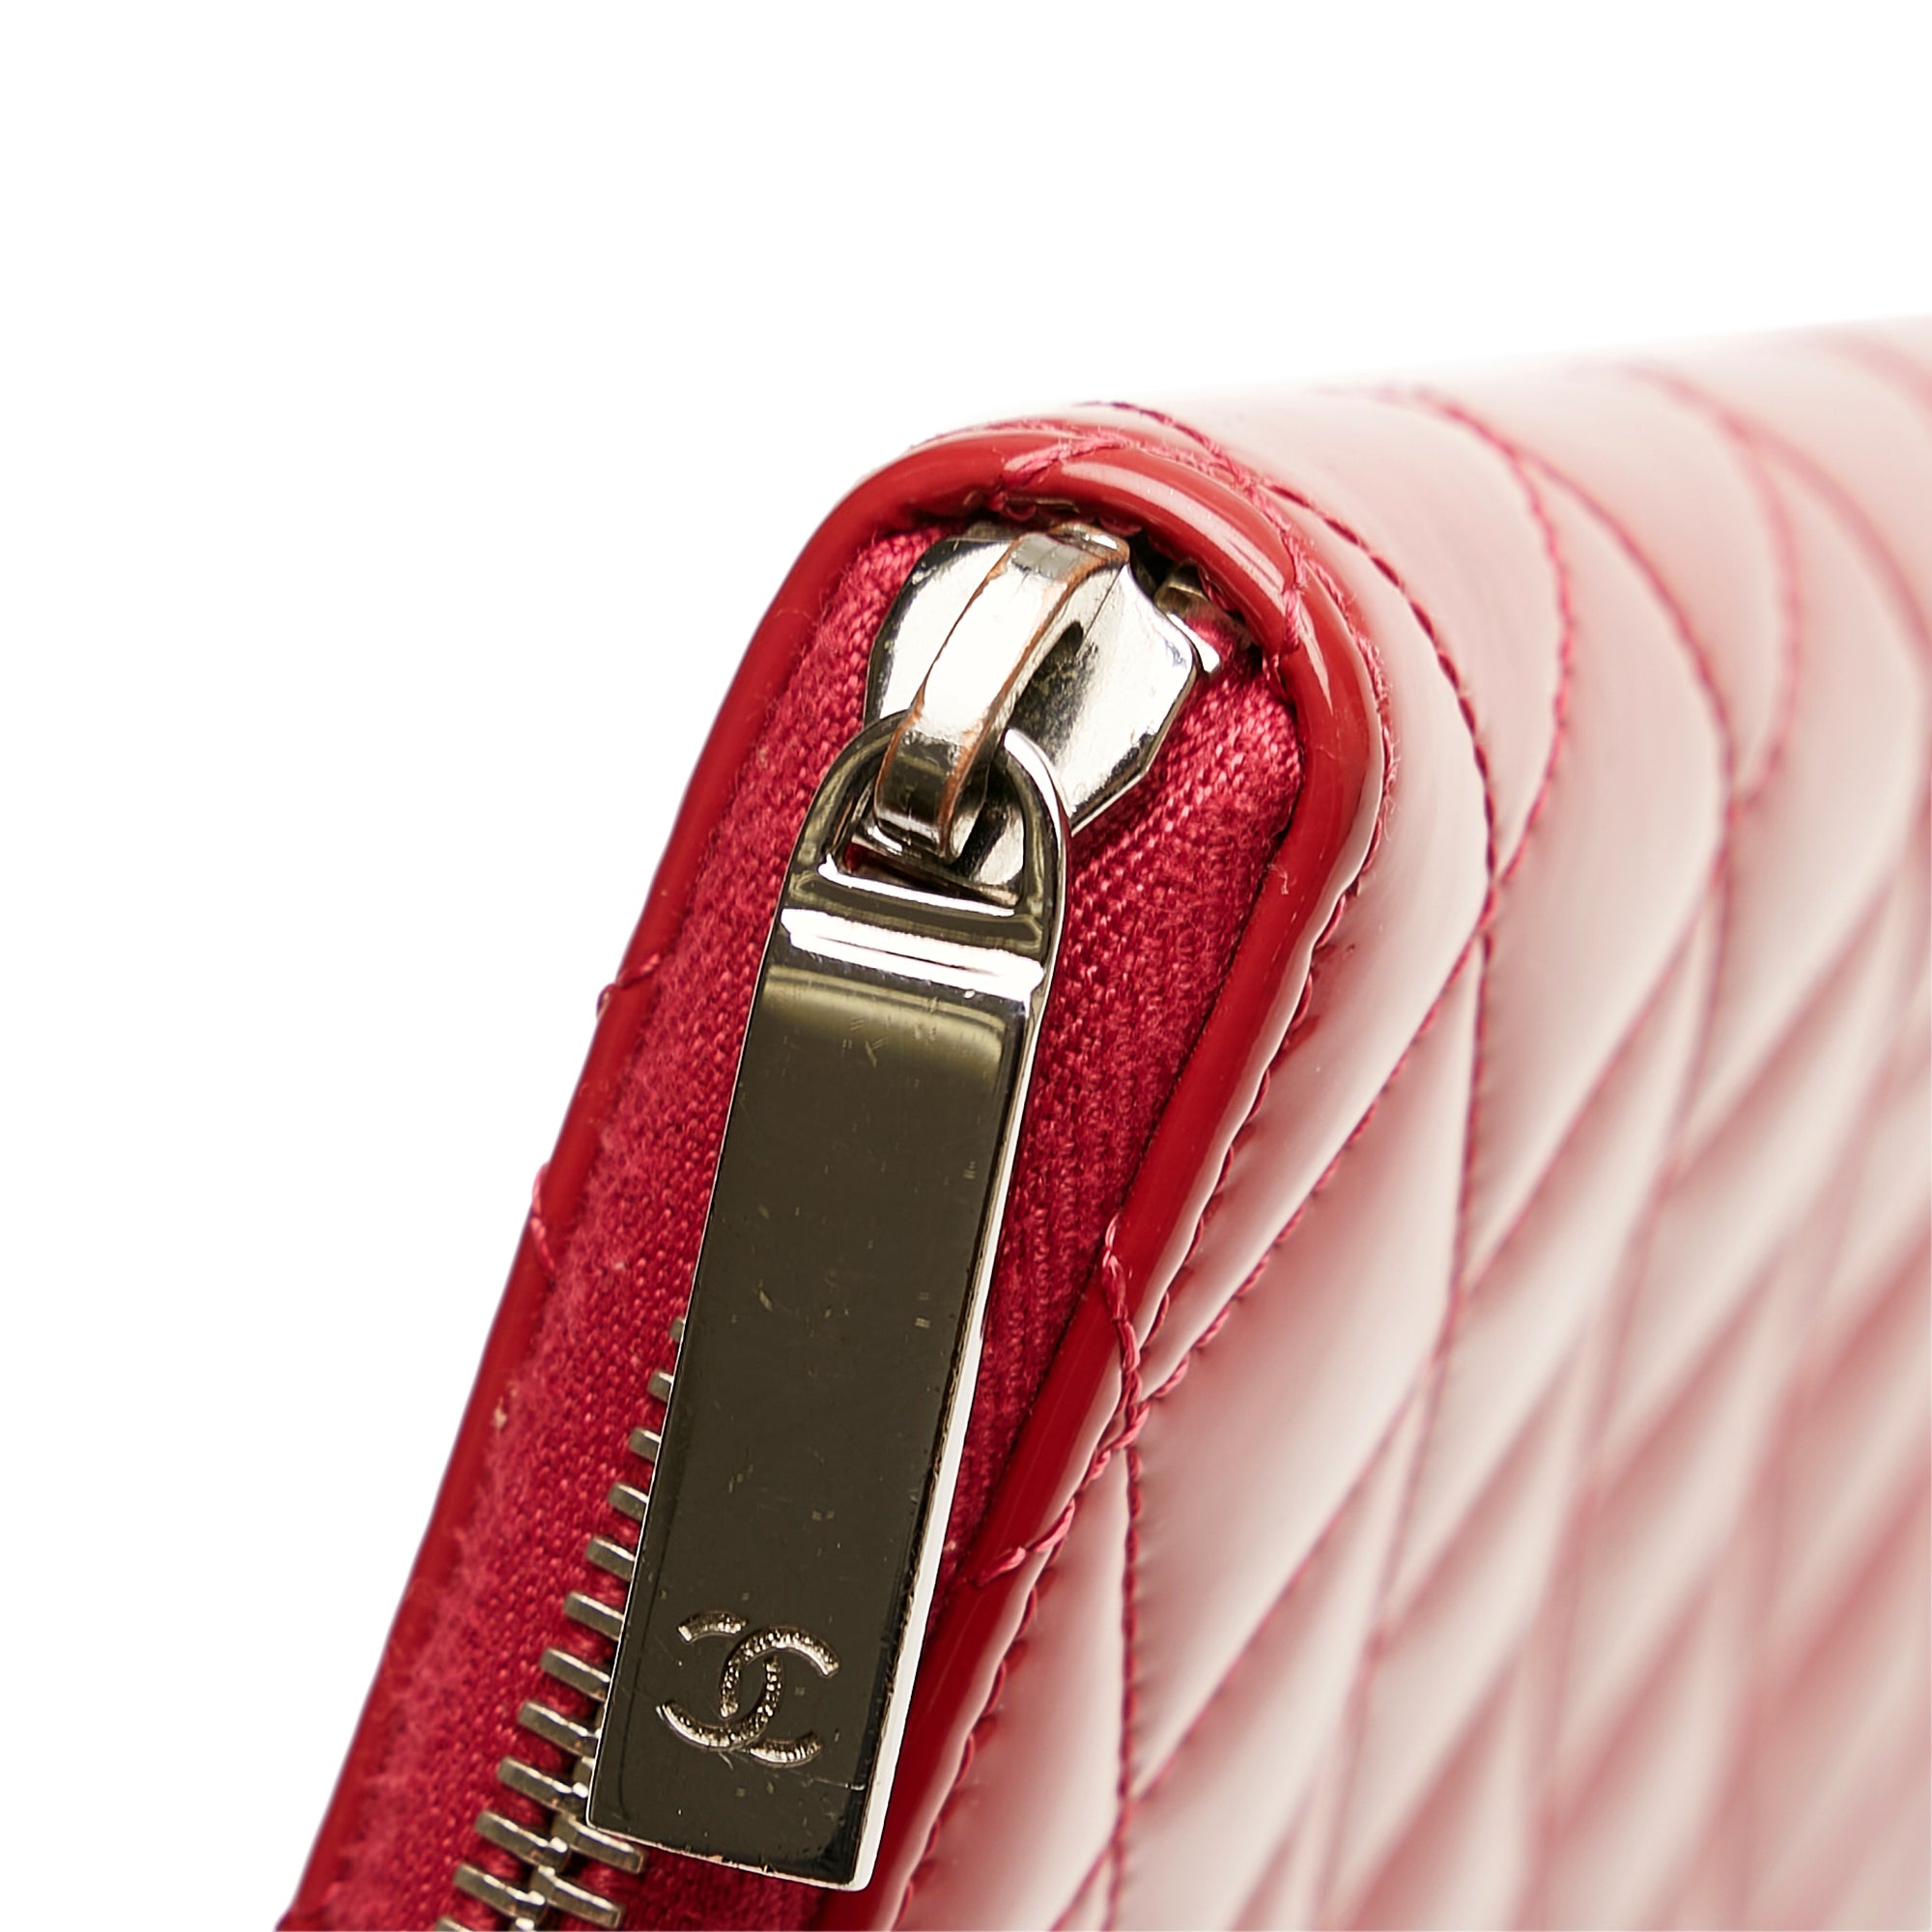 Red Chanel Brilliant Patent Zip Around Wallet